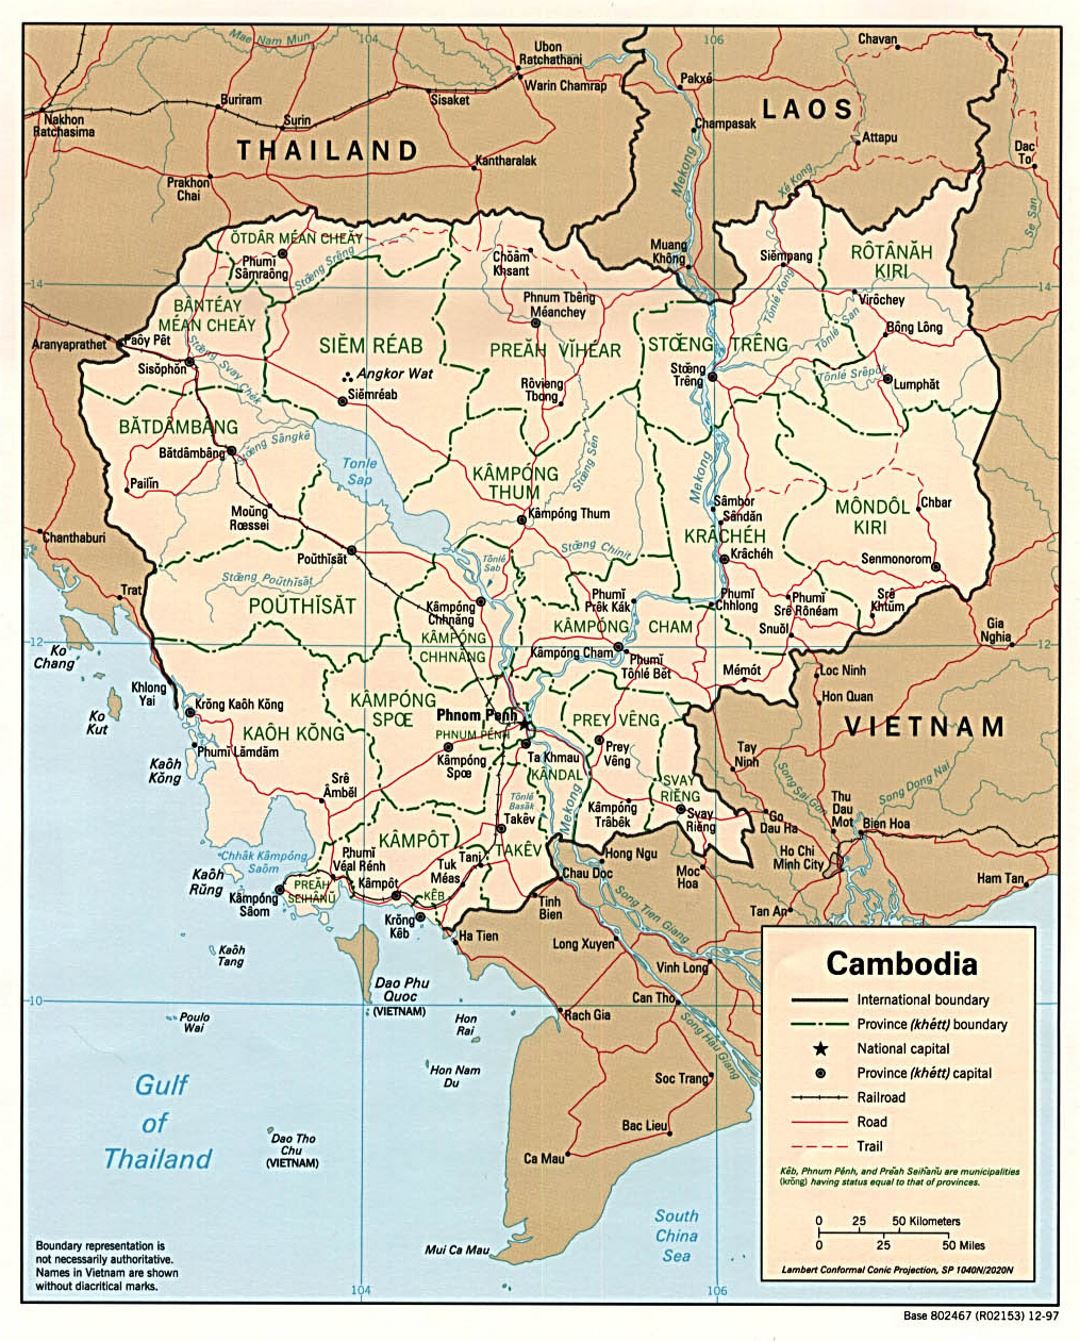 Детальная политическая и административная карта Камбоджи с дорогами, железными дорогами и крупными городами - 1997